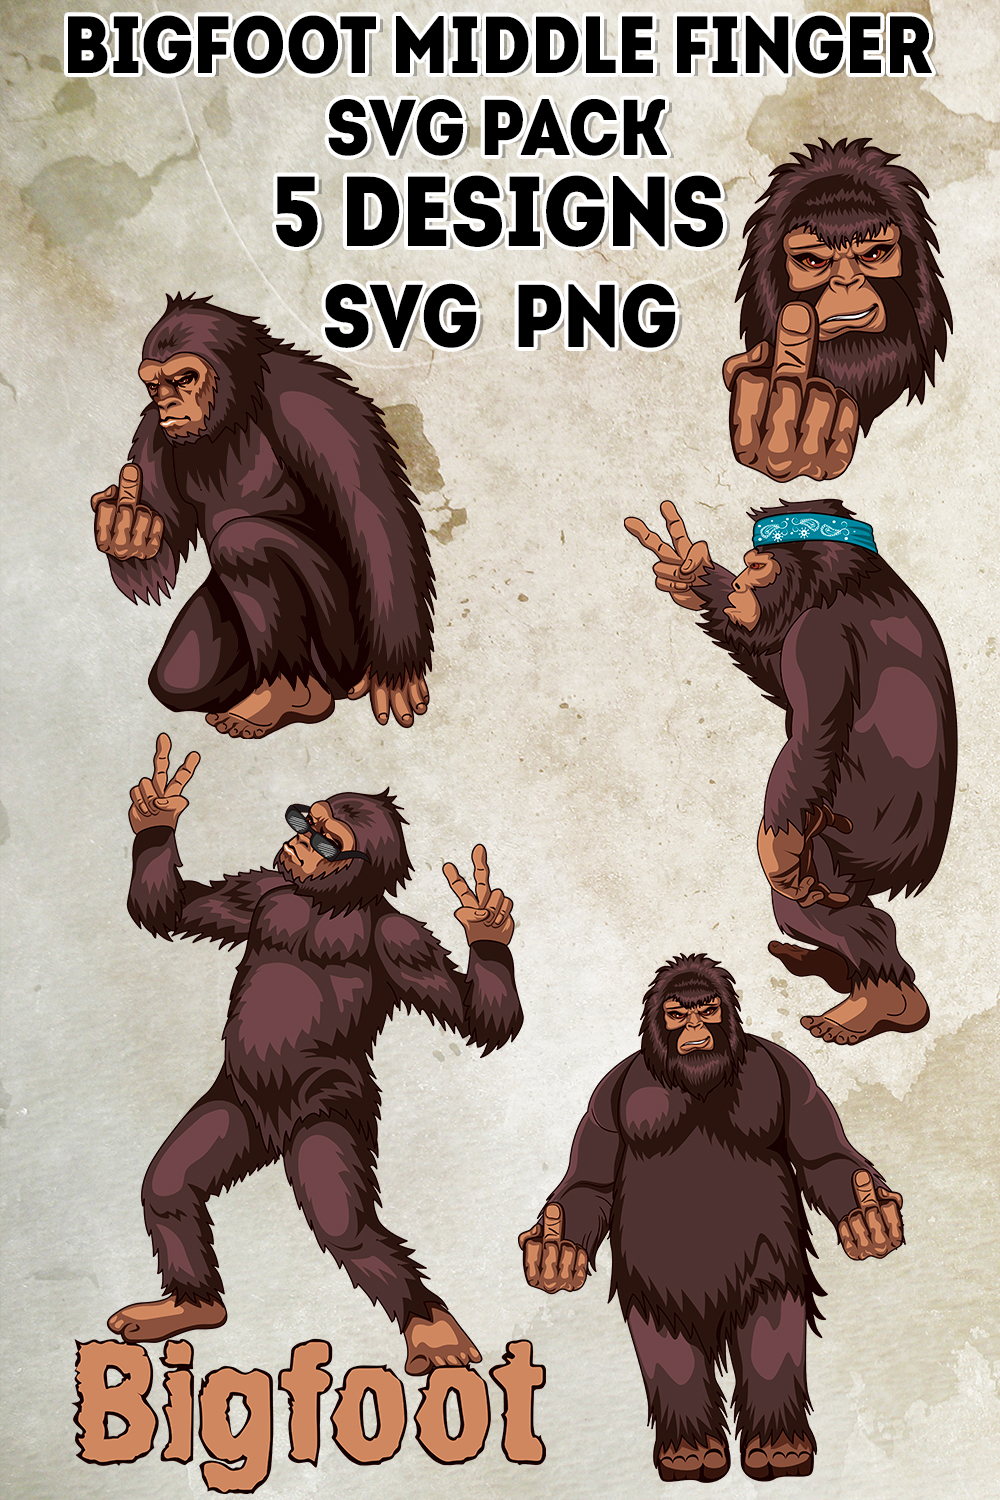 Bigfoot Middle Finger Svg - Pinterest.